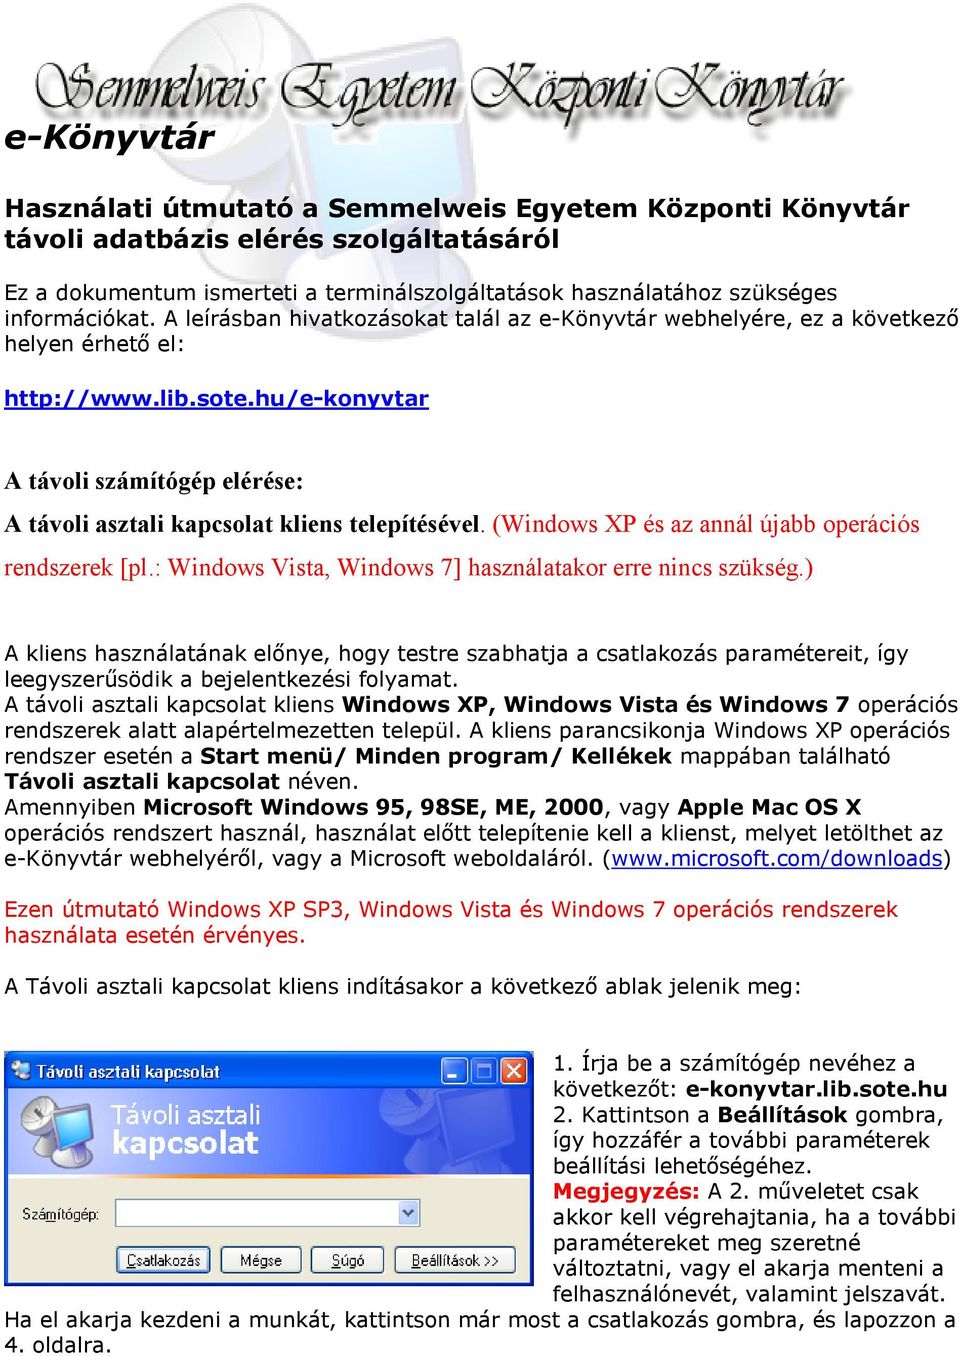 Használati útmutató a Semmelweis Egyetem Központi Könyvtár távoli adatbázis  elérés szolgáltatásáról - PDF Ingyenes letöltés